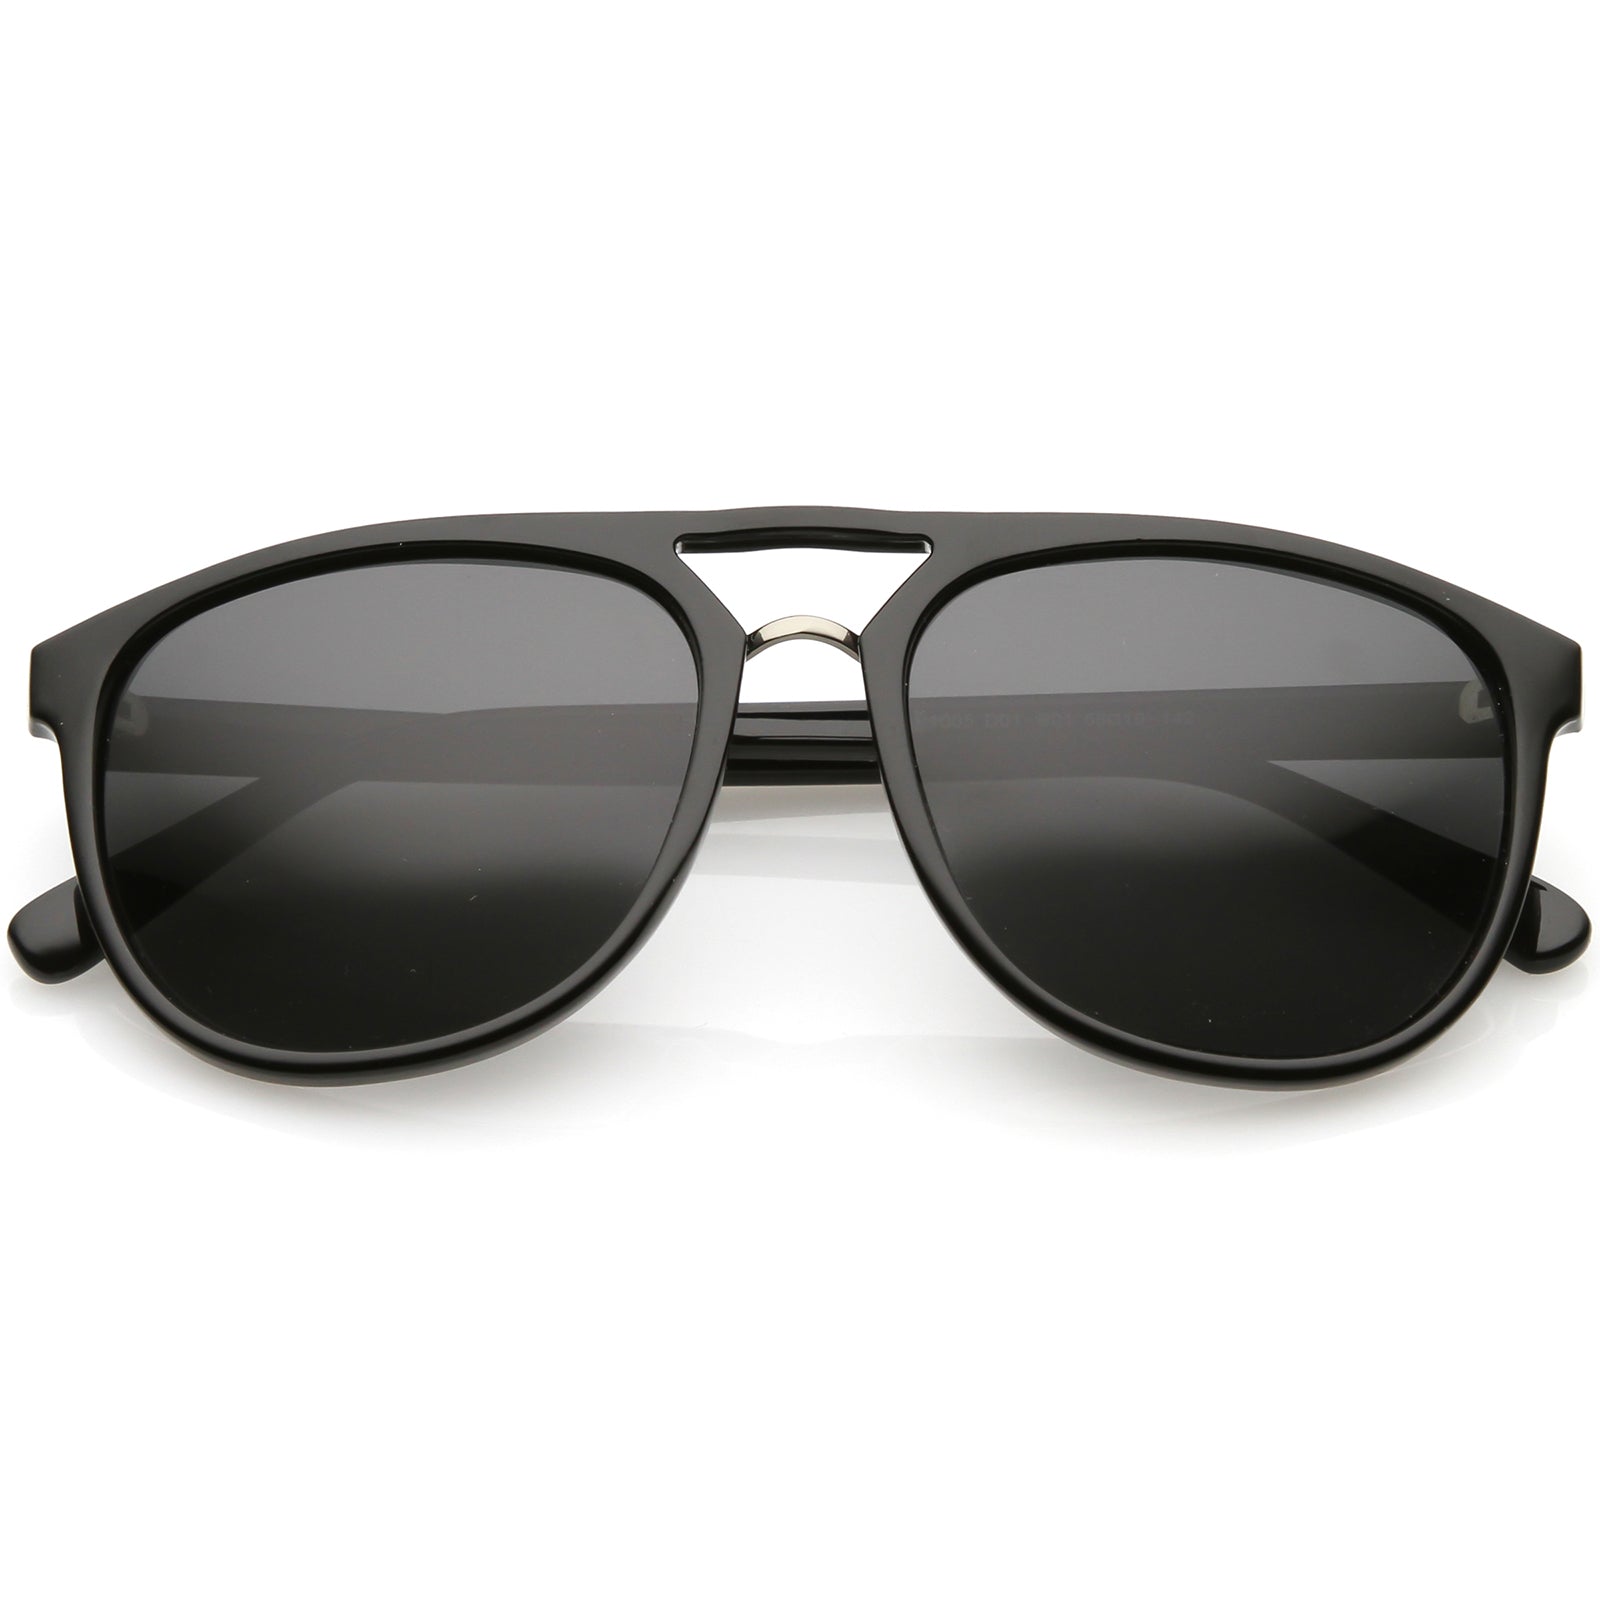 Premium Polarized Flat Top Aviator Sunglasses Metal Nose Bridge Round ...